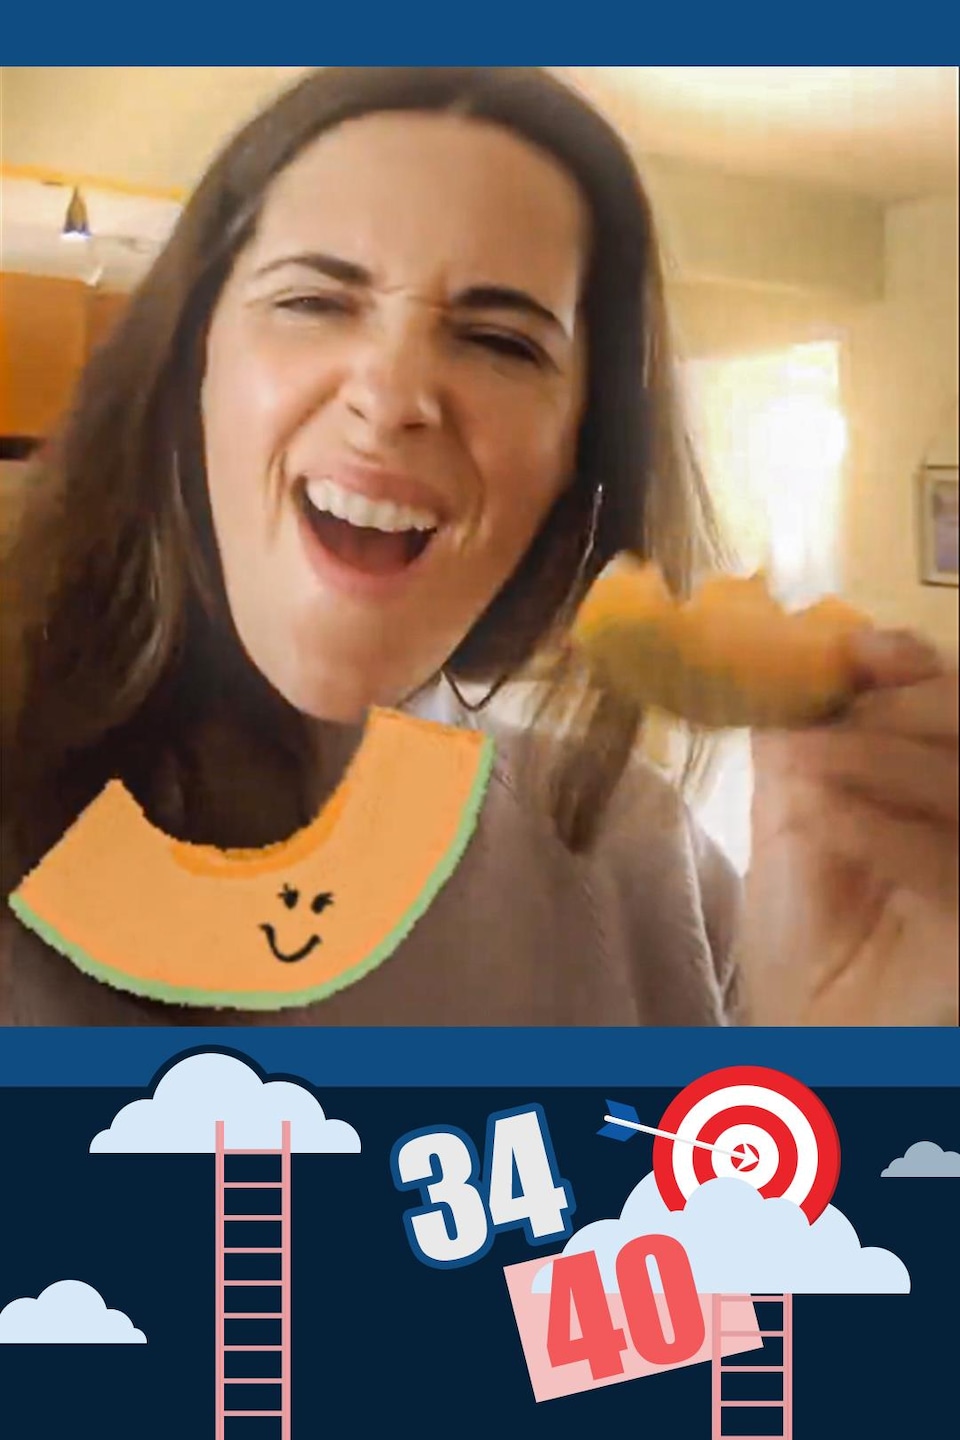 La Fureteuse fransaskoise, Nicole Lavergne-Smith, essaye de s'habituer à manger un aliment qu'elle n'aime pas, le cantaloup.